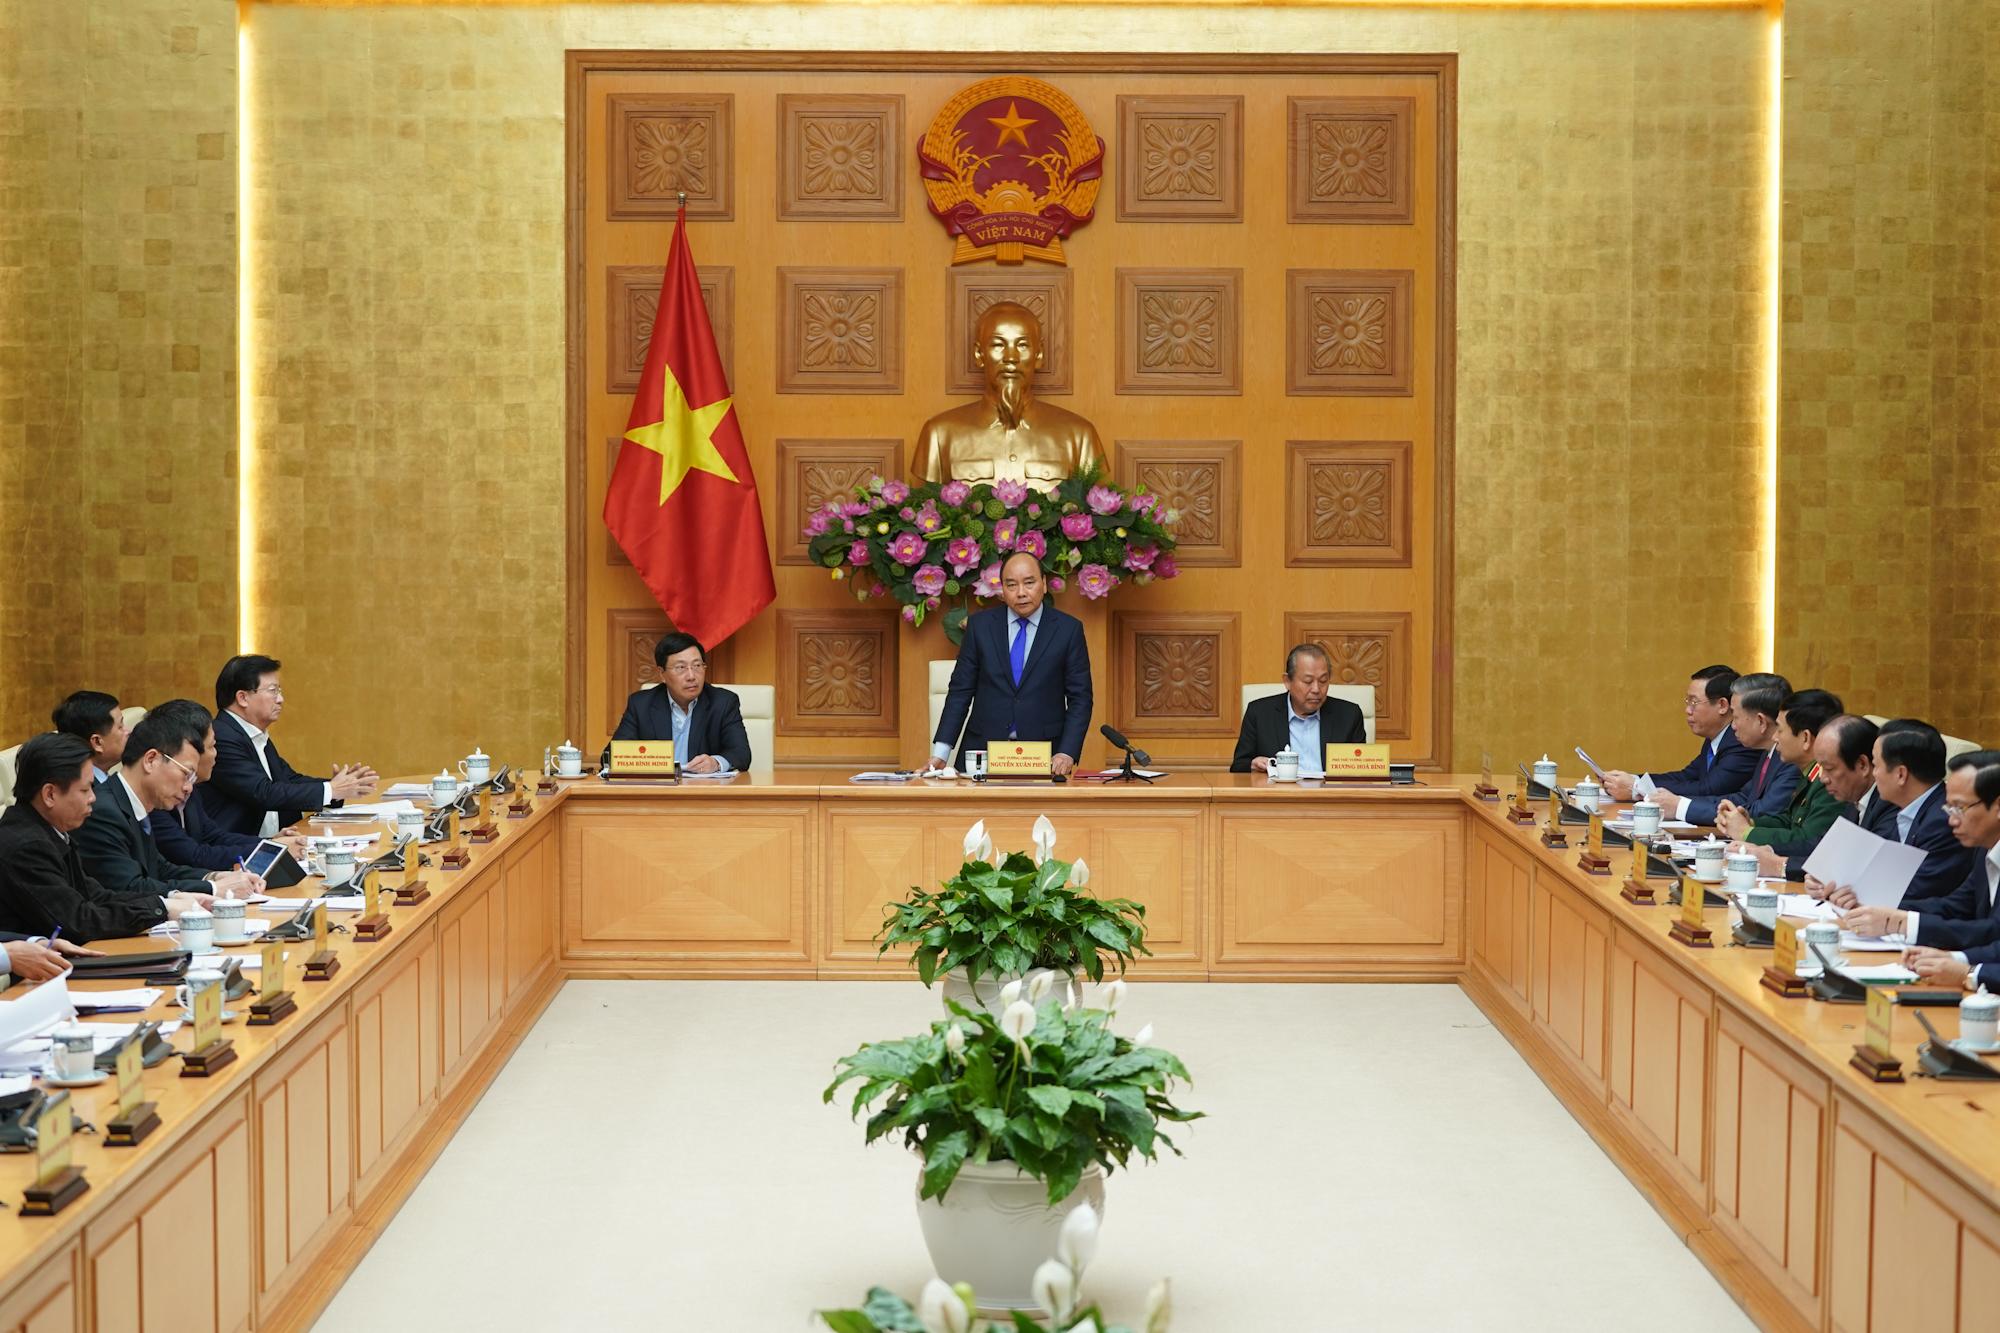 Thủ tướng Chính phủ Nguyễn Xuân Phúc phát biểu tại cuộc họp.